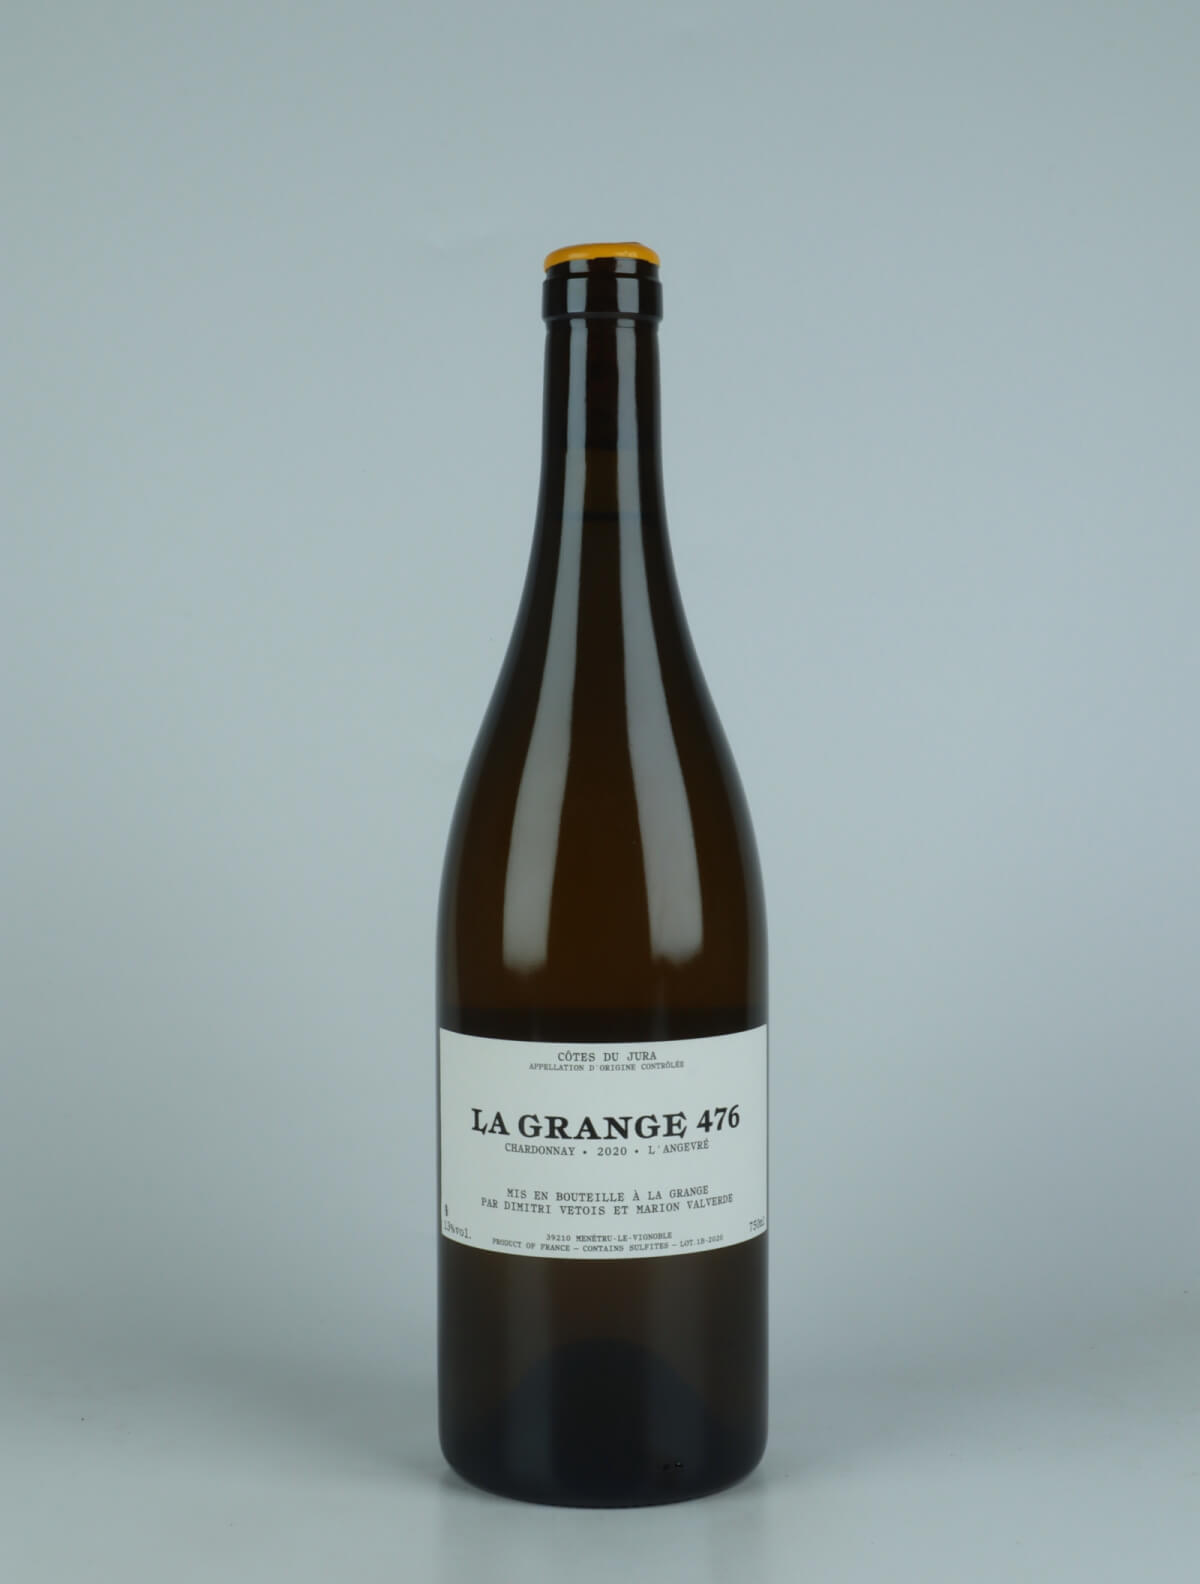 En flaske 2020 Chardonnay - L'Angevré Hvidvin fra La Grange 476, Jura i Frankrig